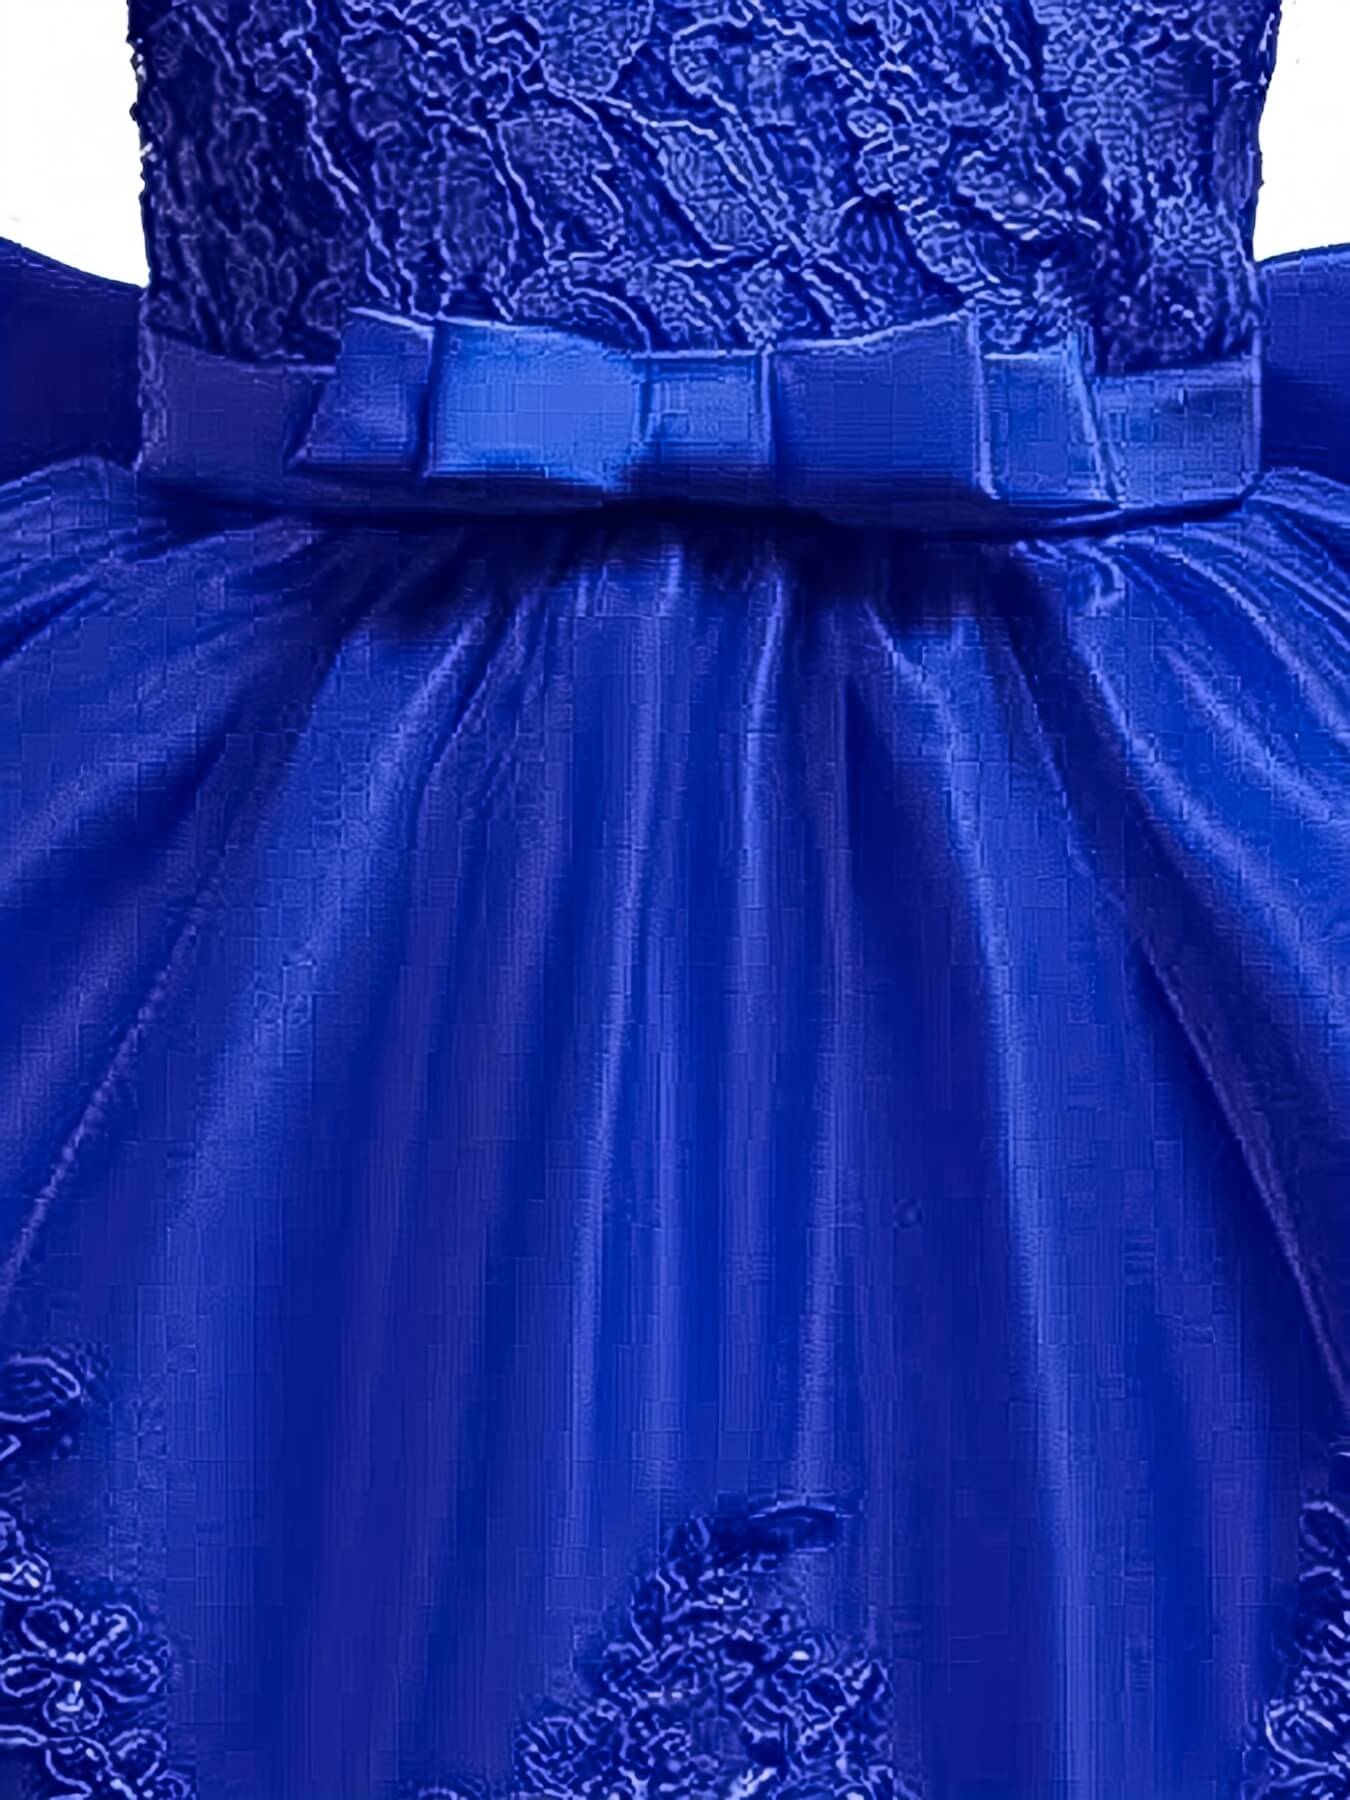 Bowknot Sleeveless Lace Girls Princess Dress